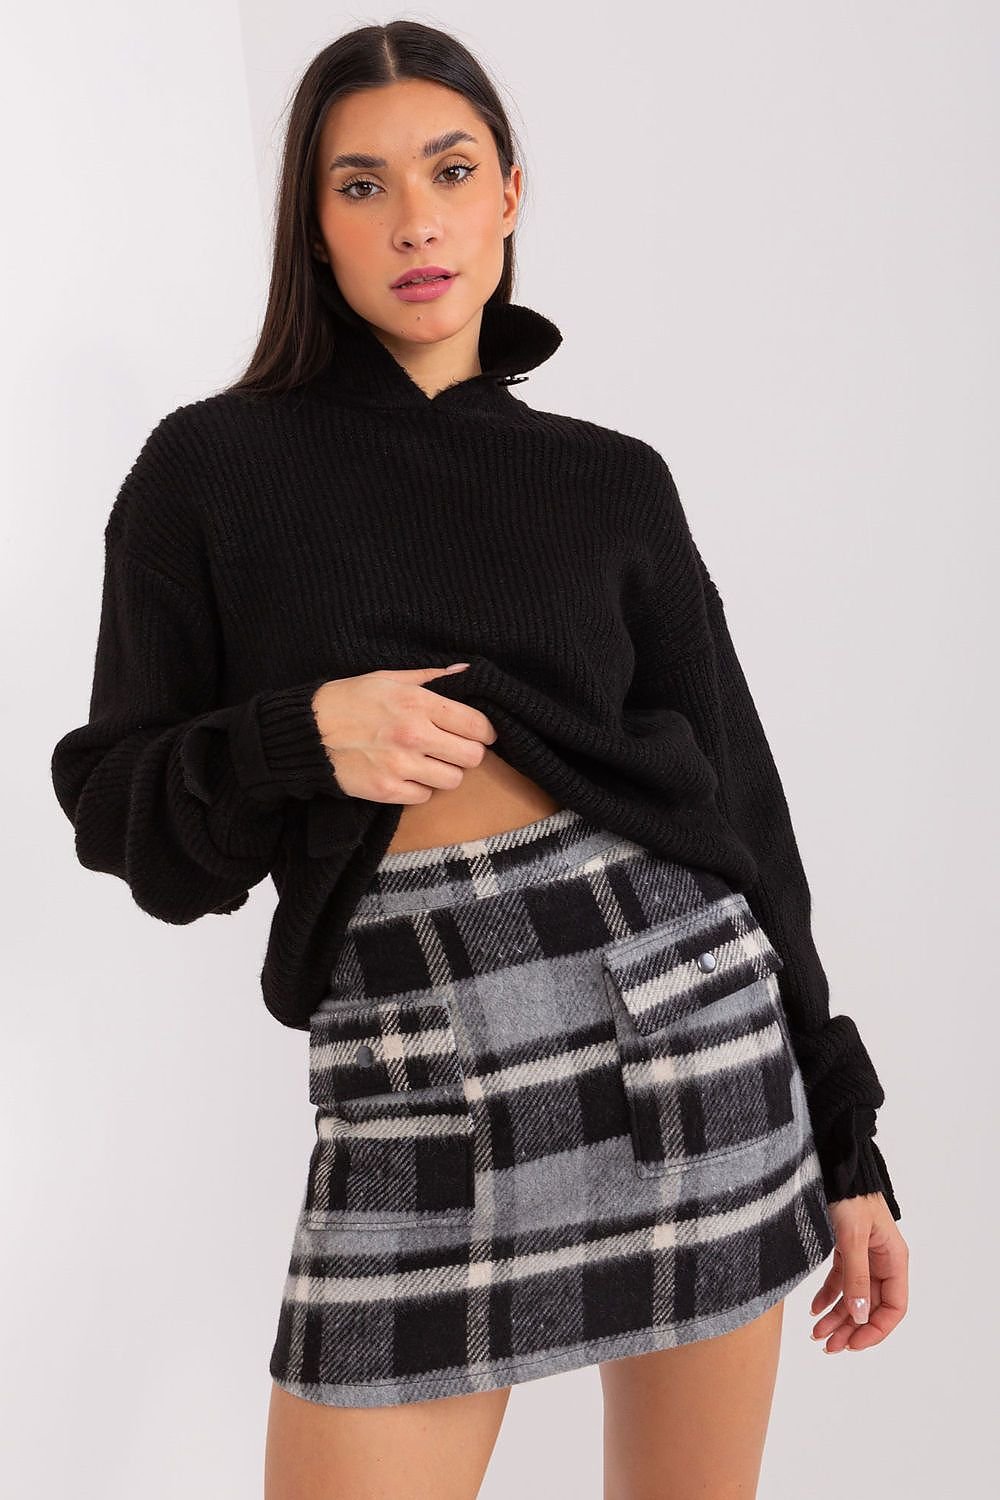 Jupe en laine courte à carreaux noirs et blancs, coupe droite et style casual, idéale pour l'automne-hiver.